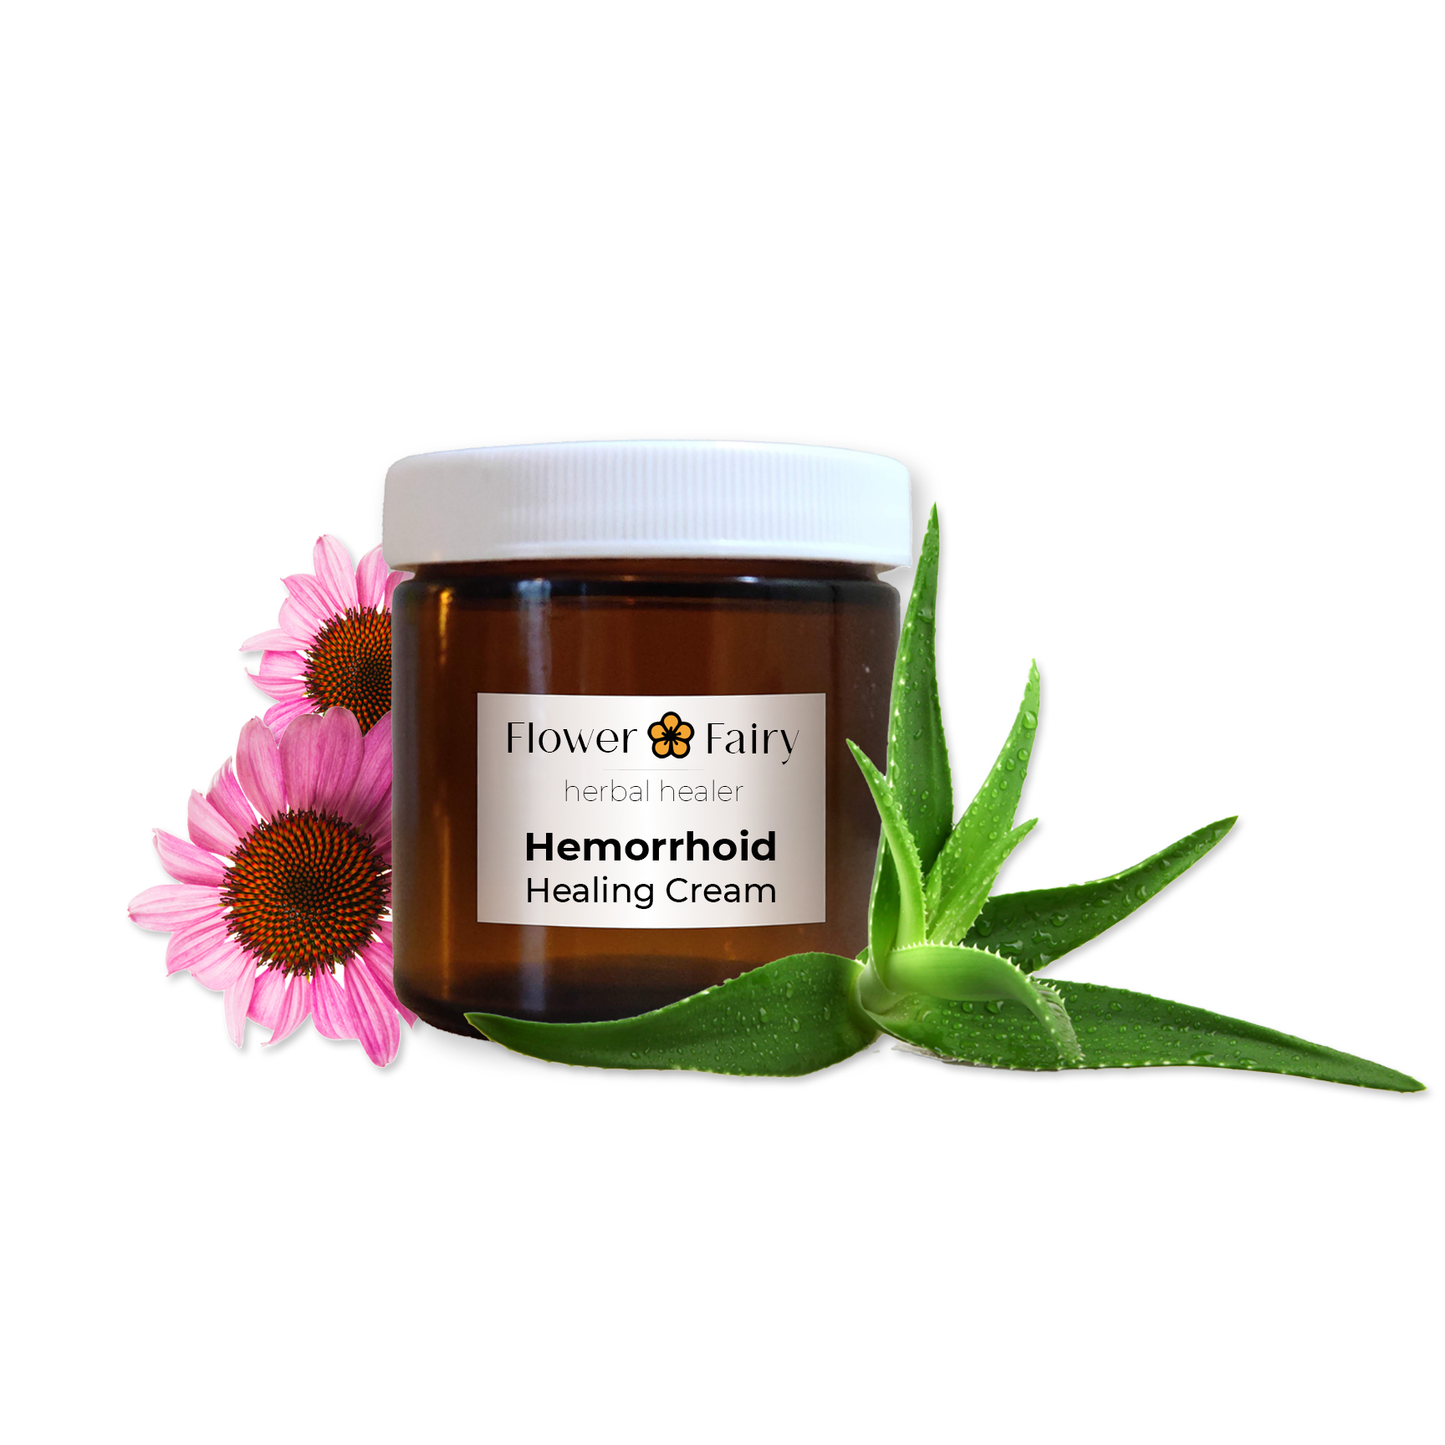 Hemorrhoid Healing Cream